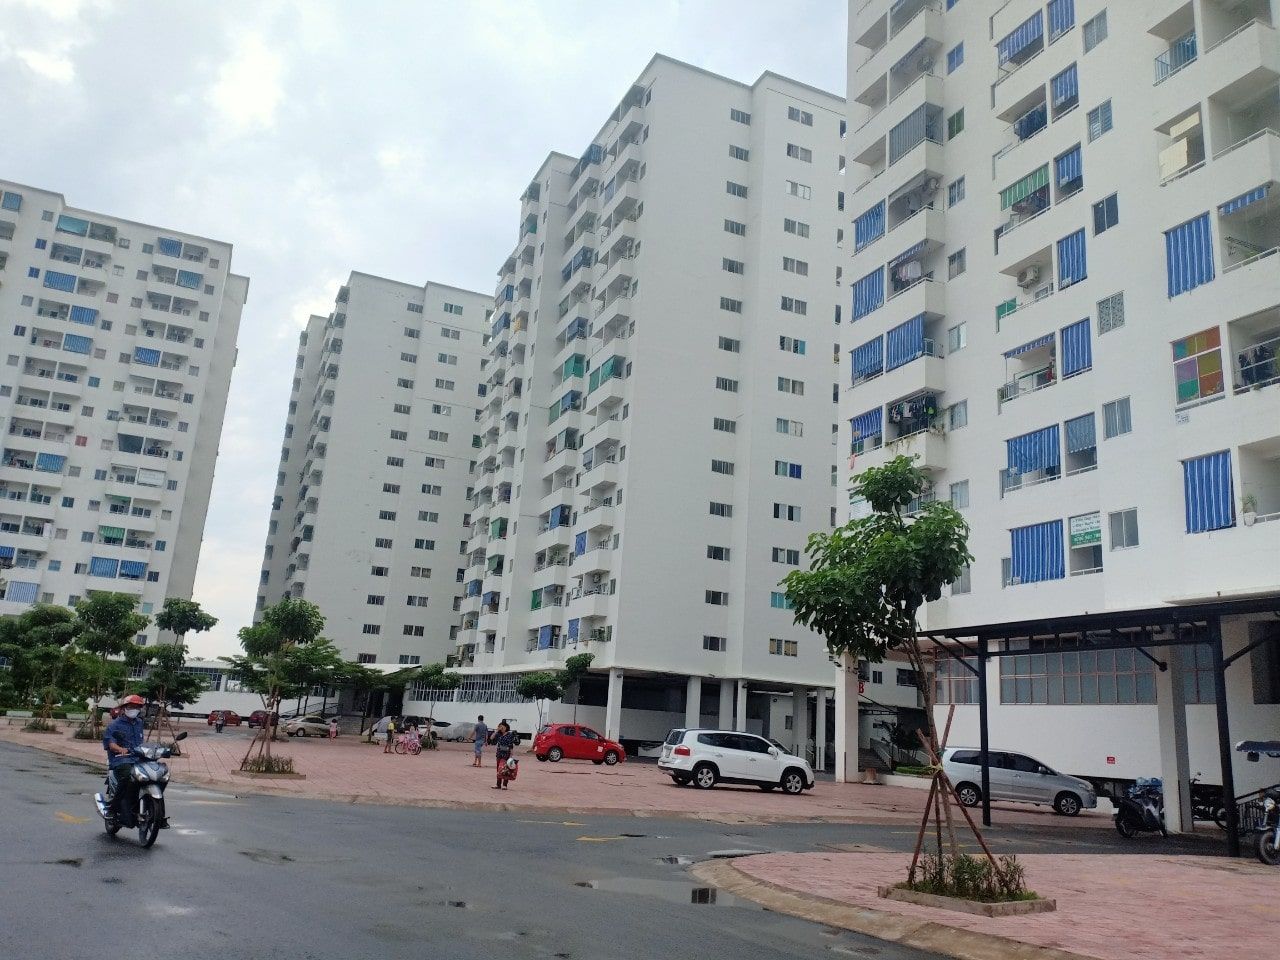 Những câu hỏi thường gặp về chung cư Lê Thành cho người mua lần đầu tham khảo